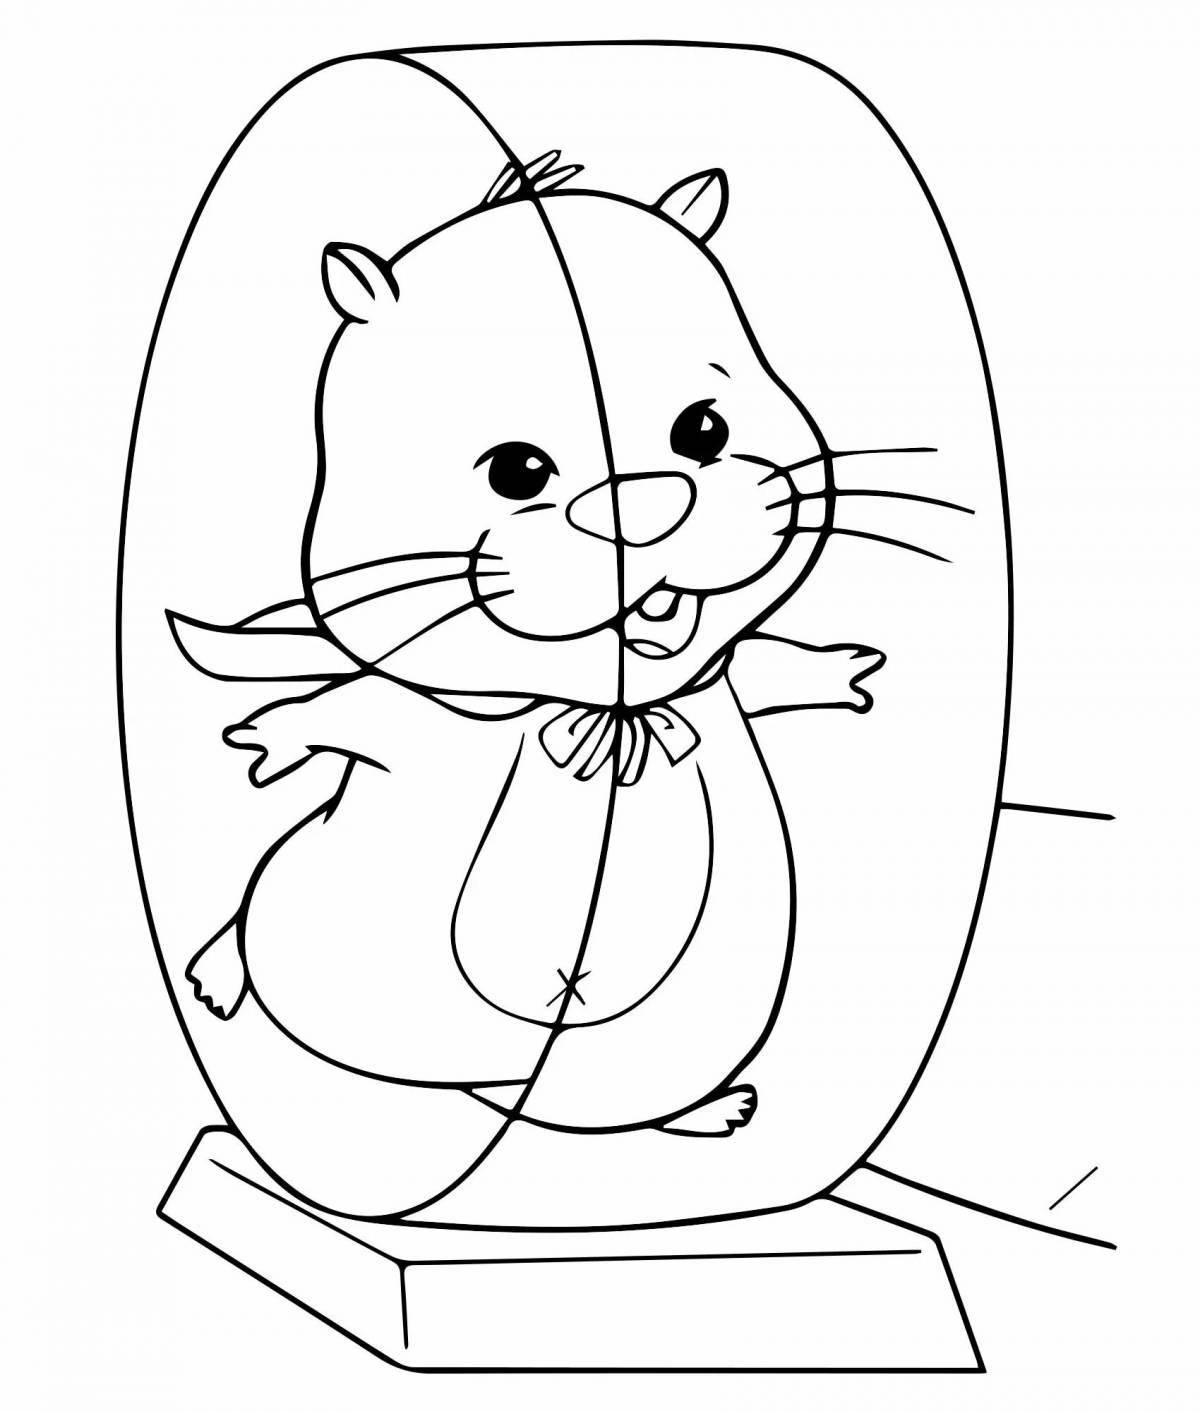 Animated Christmas hamster